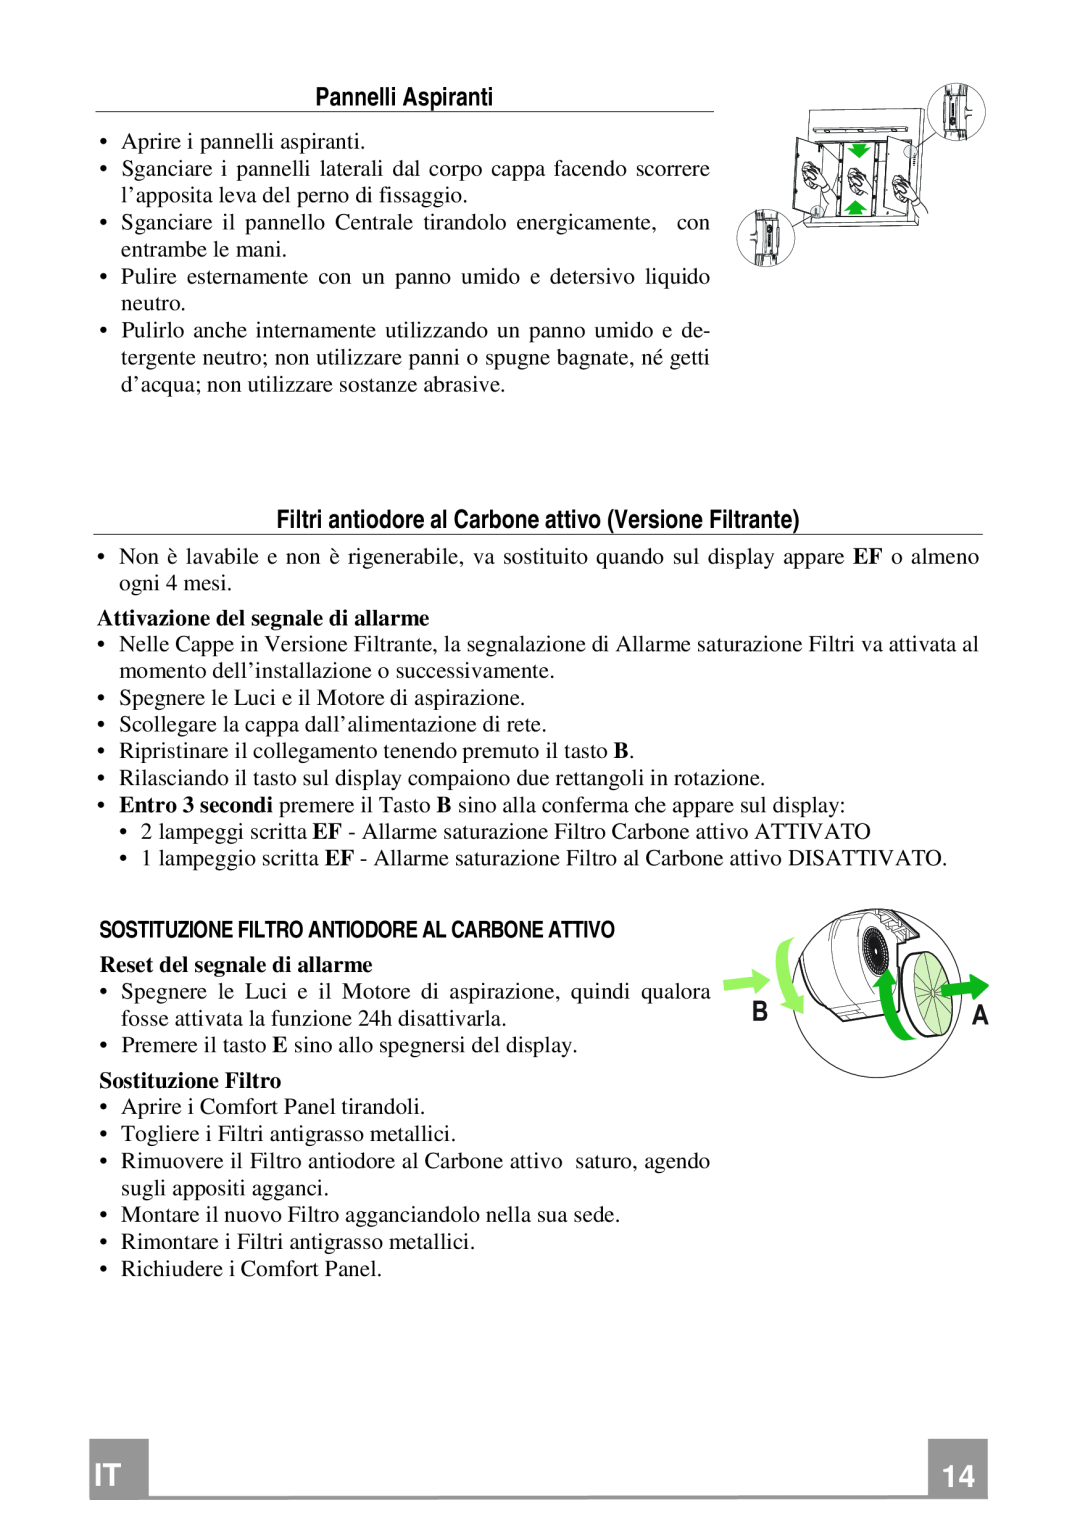 Franke Consumer Products FQD 907 manual Pannelli Aspiranti, Sostituzione Filtro Antiodore Al Carbone Attivo 